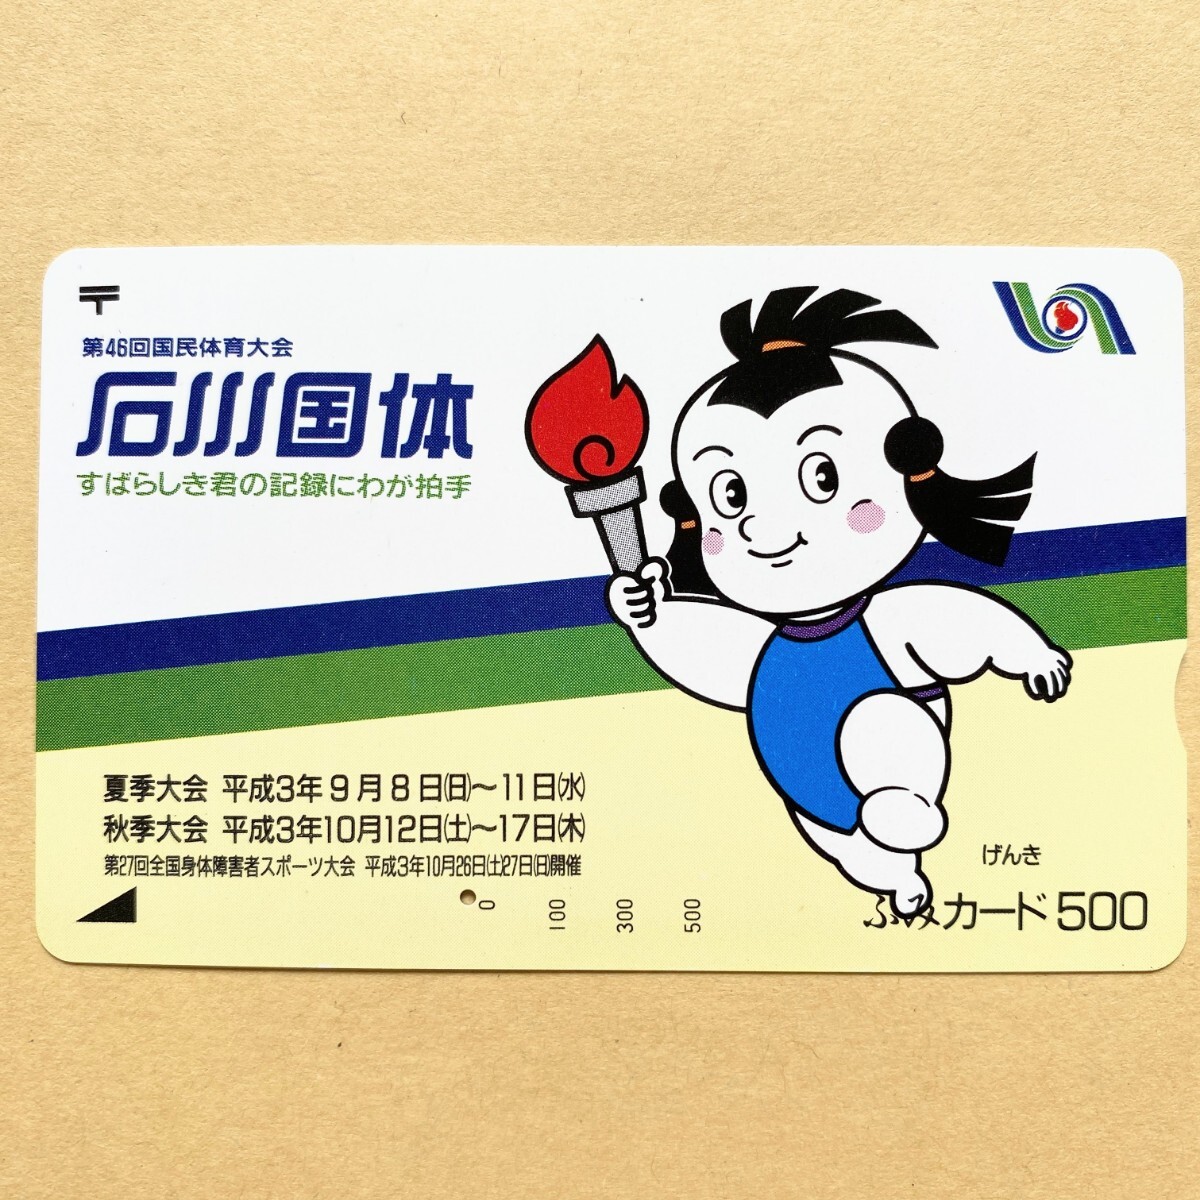 【使用済】 ふみカード 第46回国民体育大会 石川国体 げんき_画像1